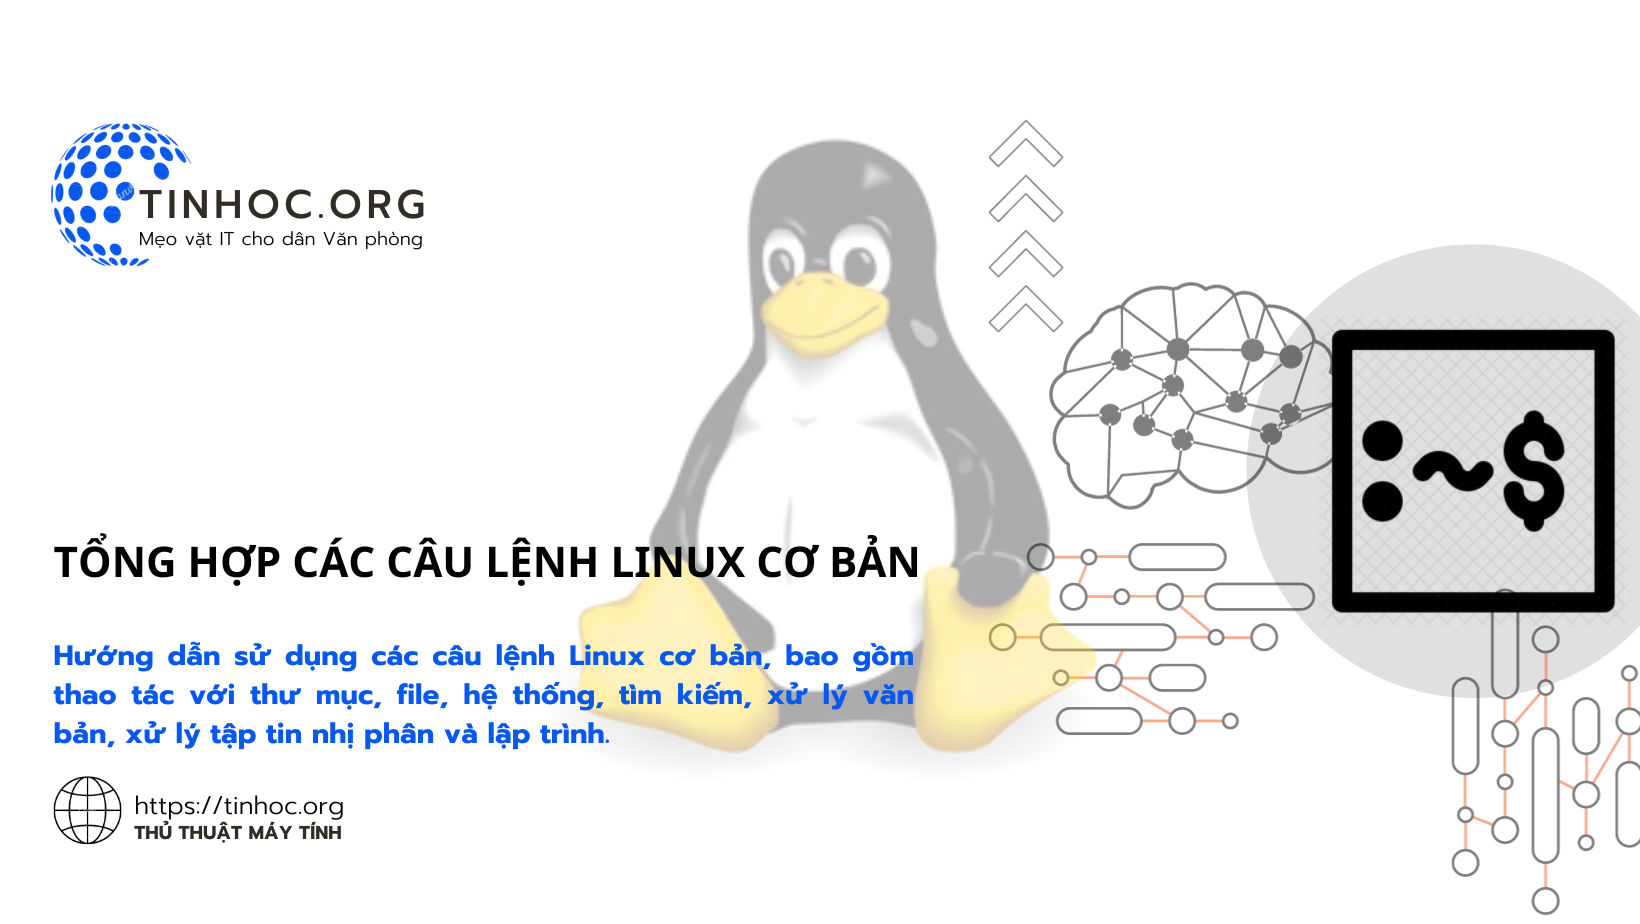 Hướng dẫn sử dụng các câu lệnh Linux cơ bản, bao gồm thao tác với thư mục, file, hệ thống, tìm kiếm, xử lý văn bản, xử lý tập tin nhị phân và lập trình.